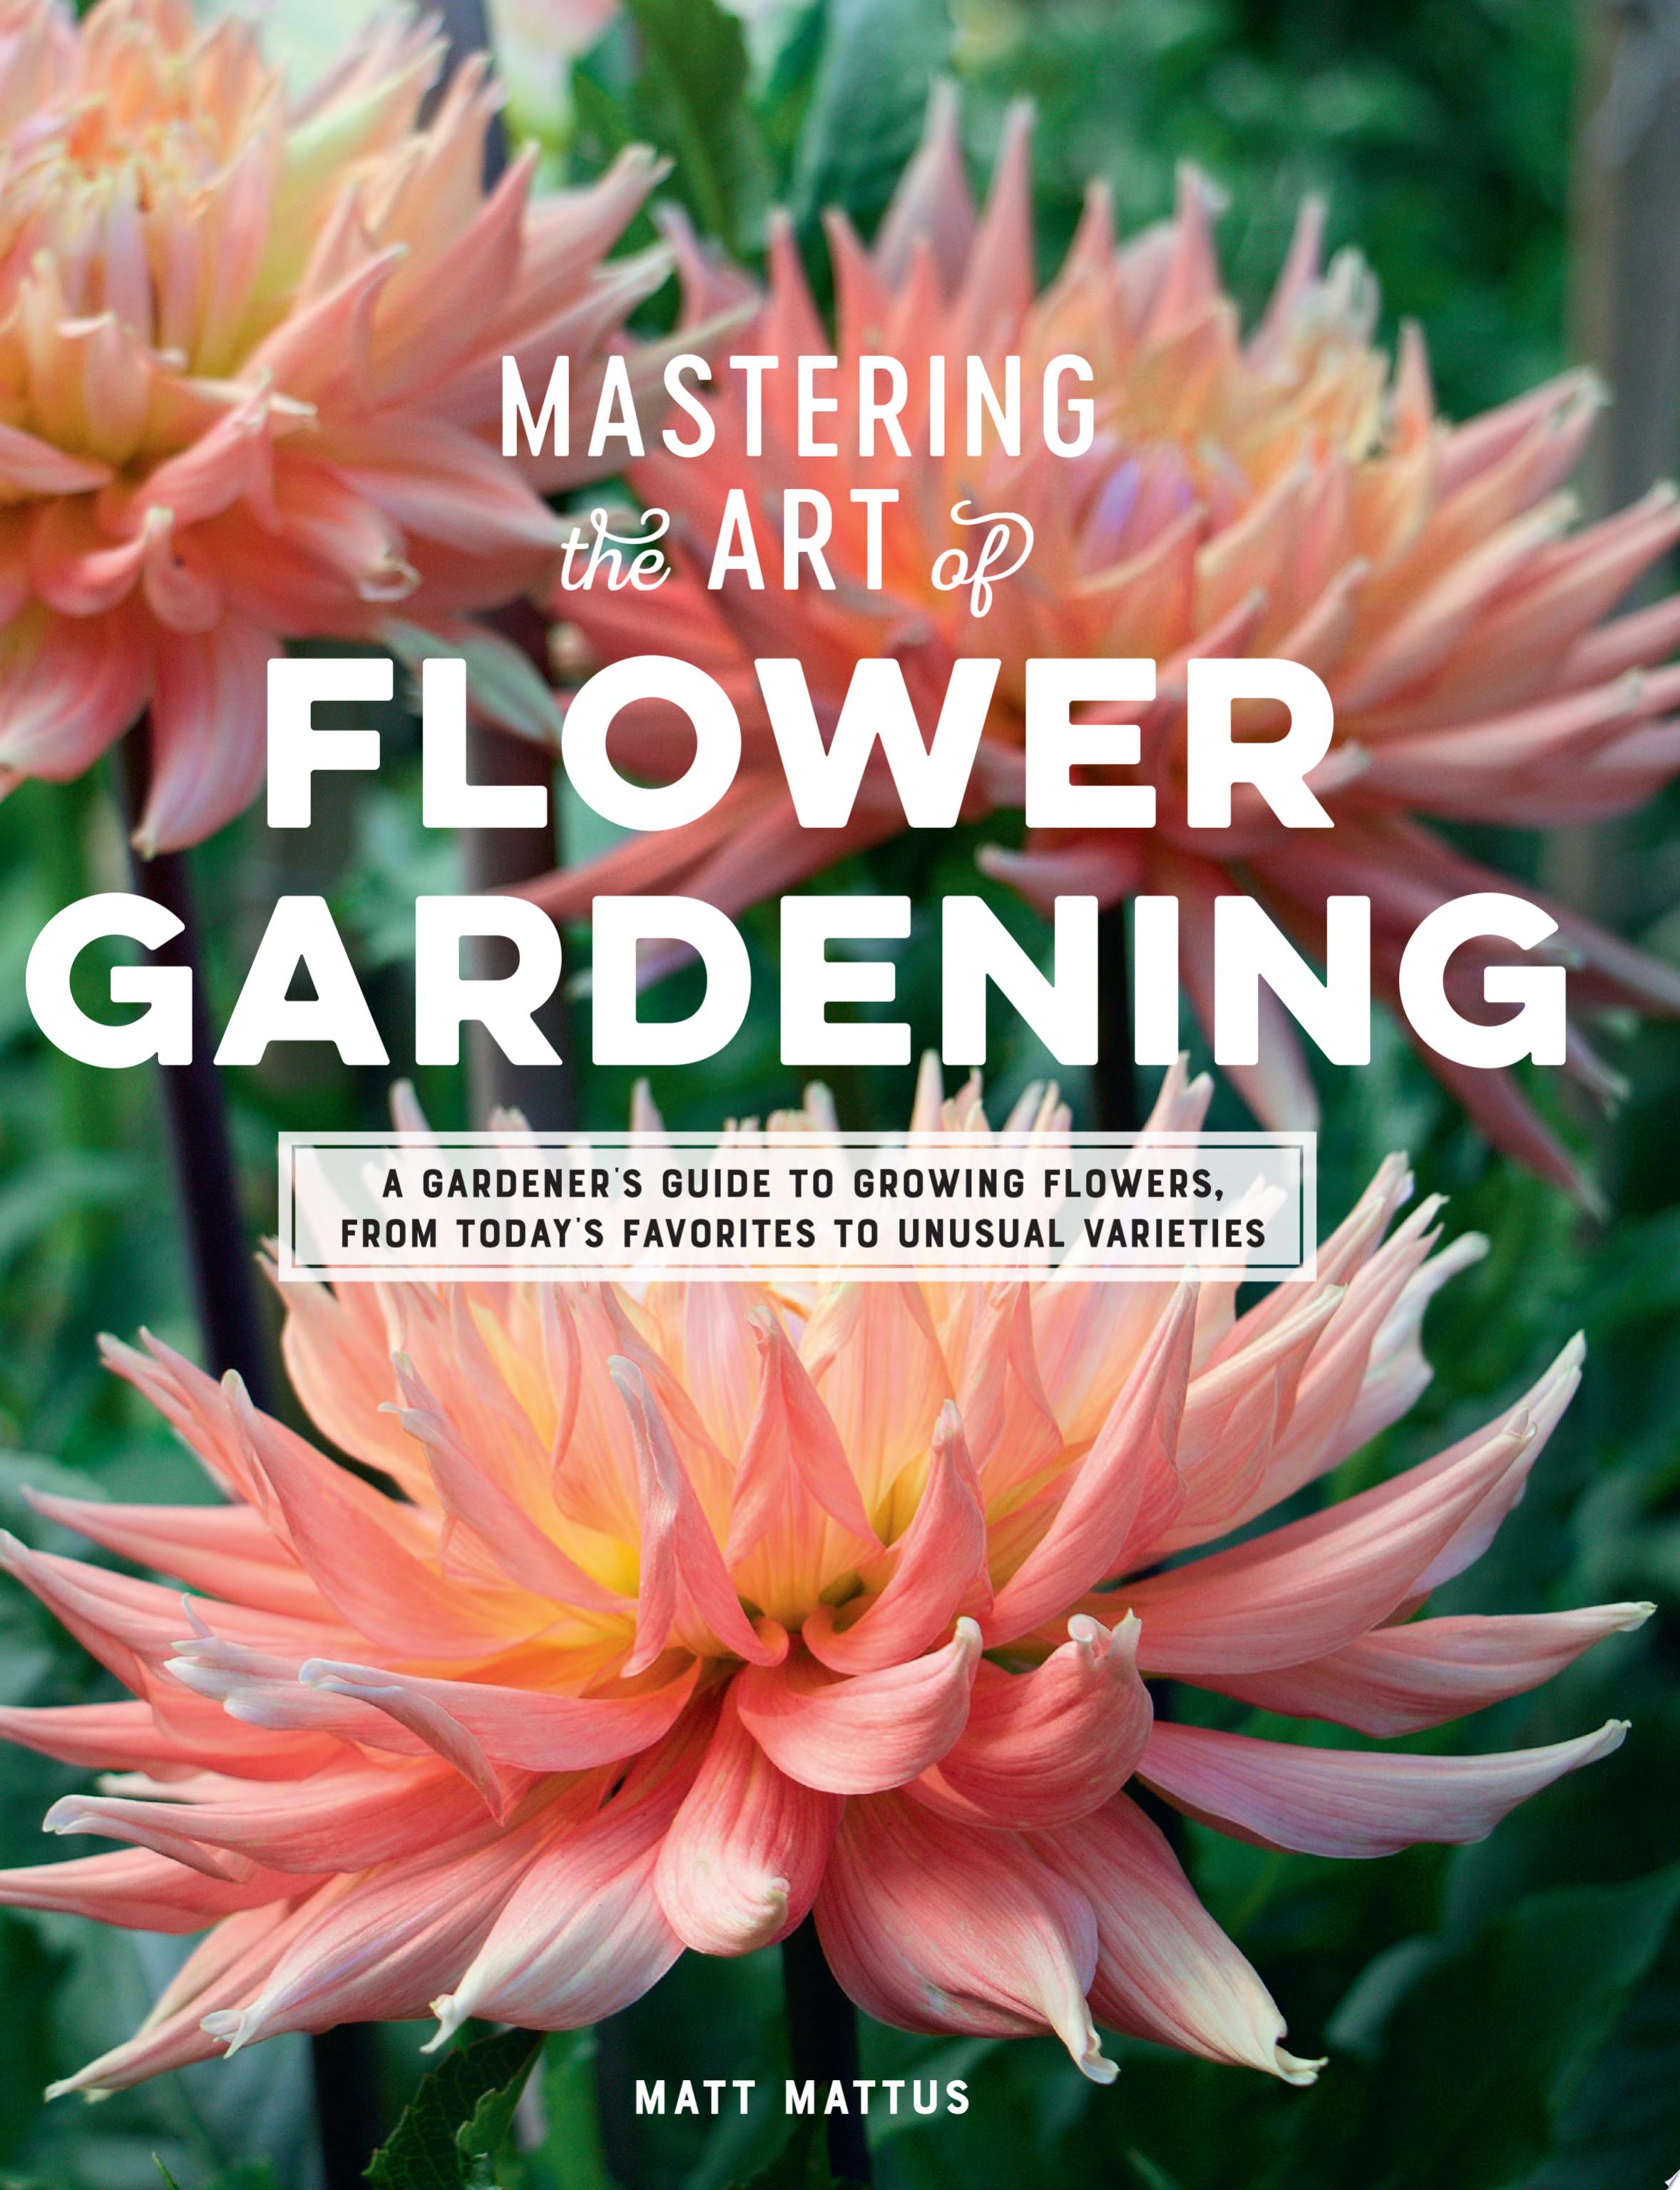 Image for "Mastering the Art of Flower Gardening"